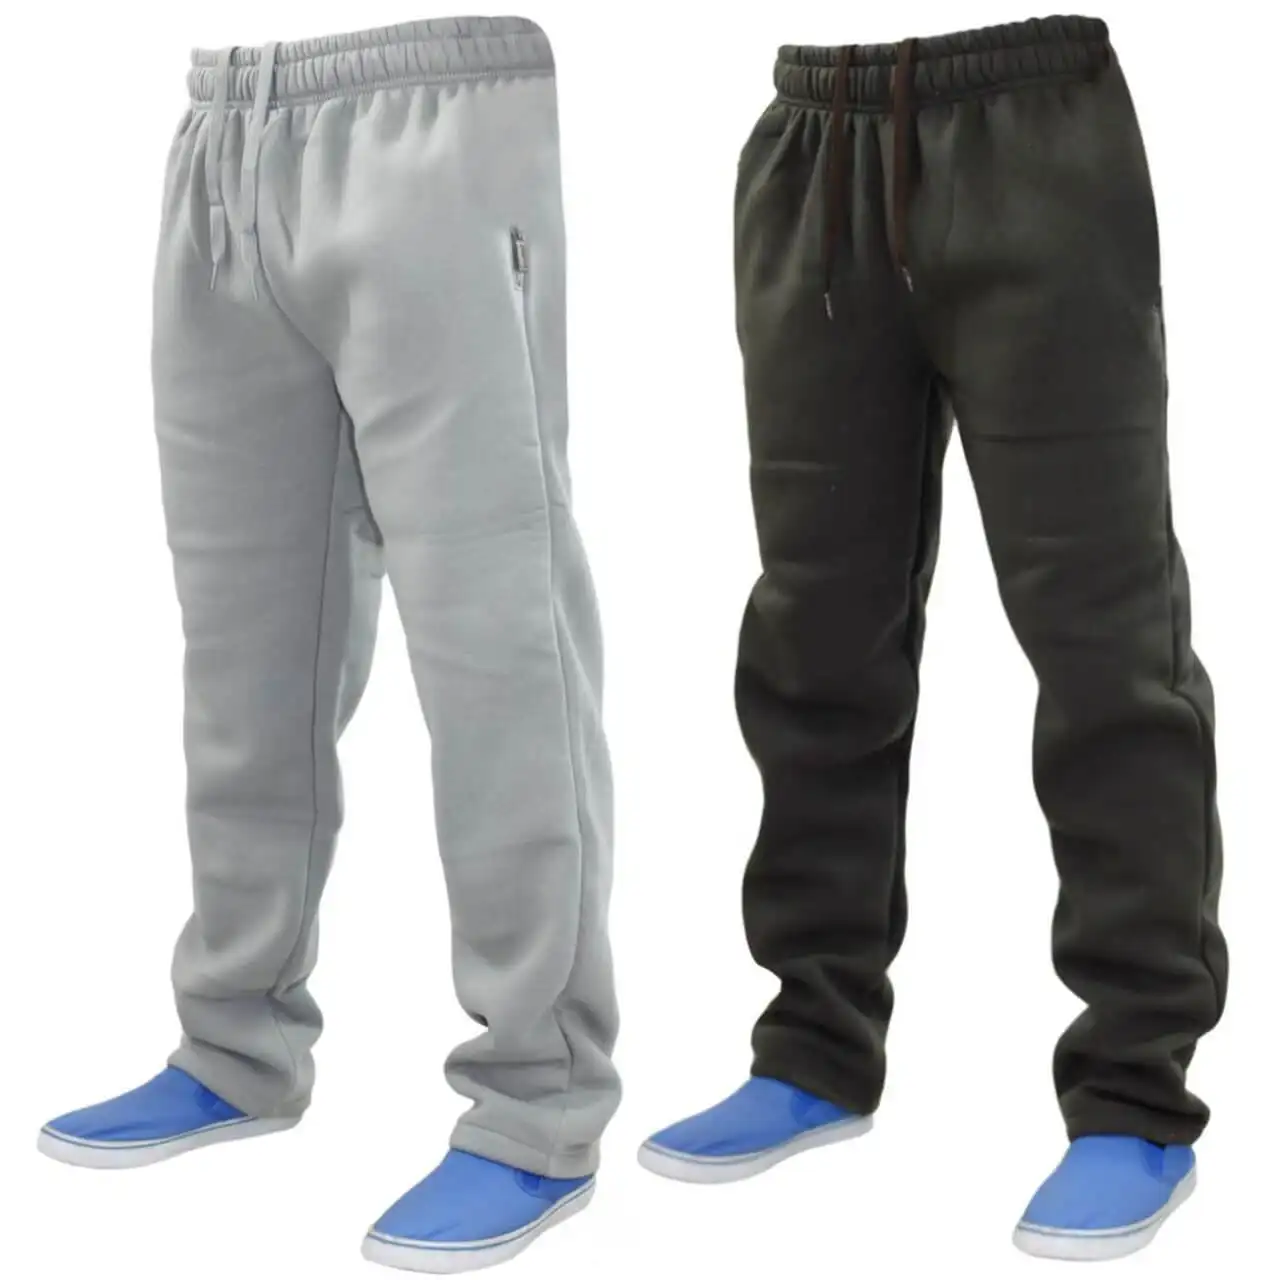 Pantaloni della tuta all'ingrosso Yasin indossa i più nuovi sport personalizzati palestra pantaloni Jogger abbigliamento ricamo tasche OEM pantaloni personalizzati in pile